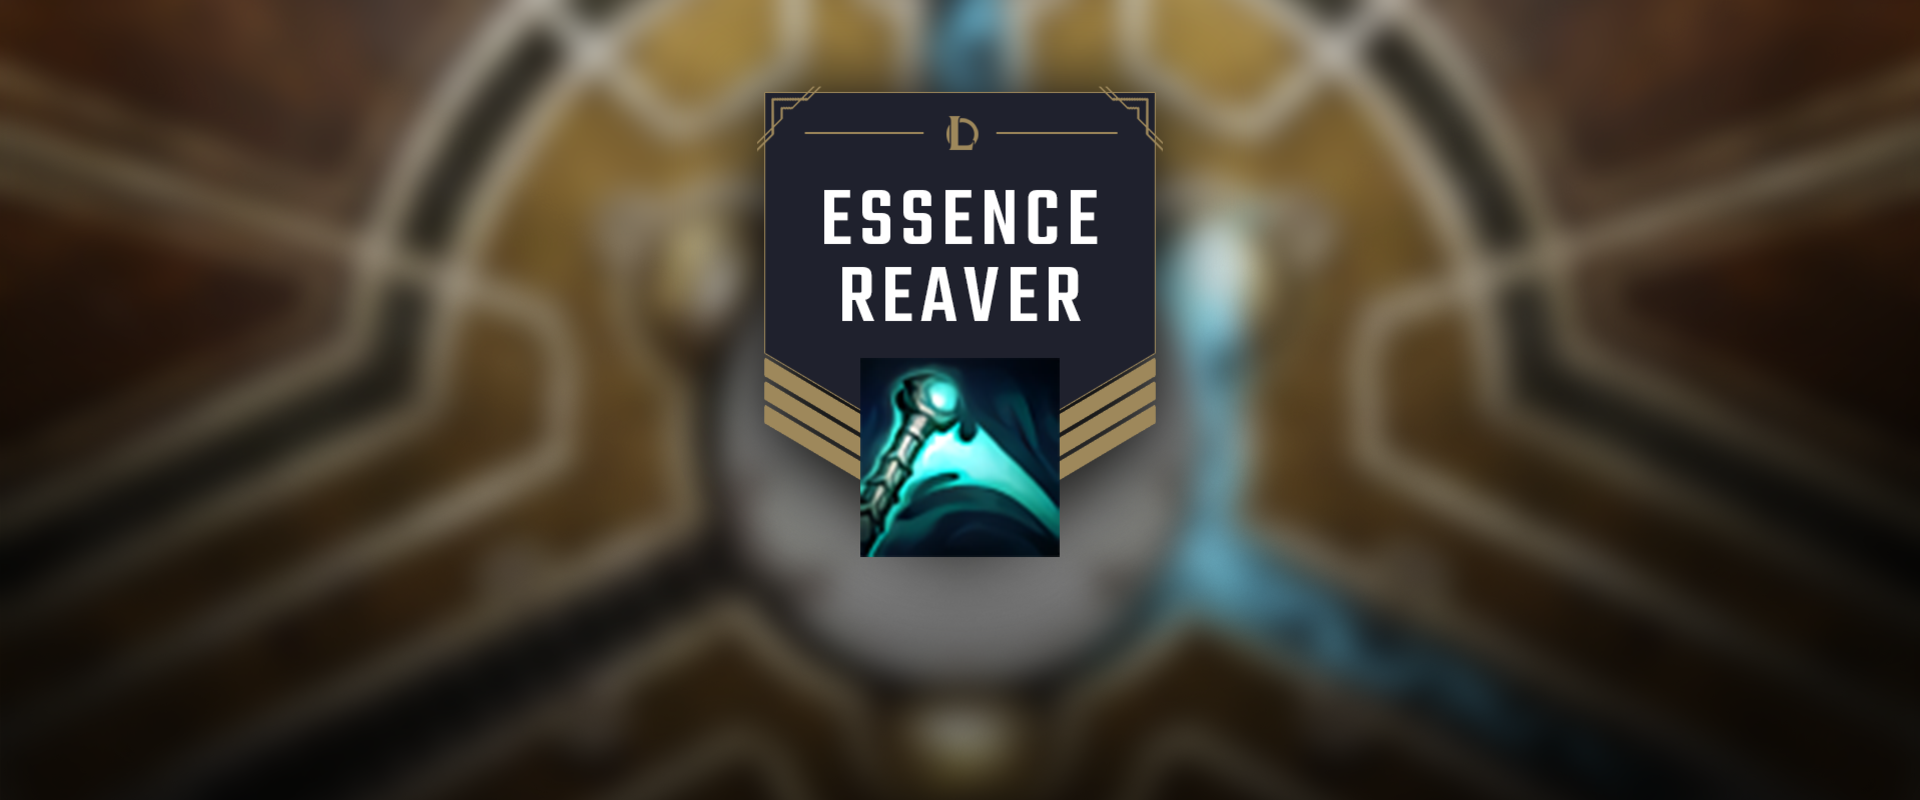 Mi történt az Essence Reaverrel?